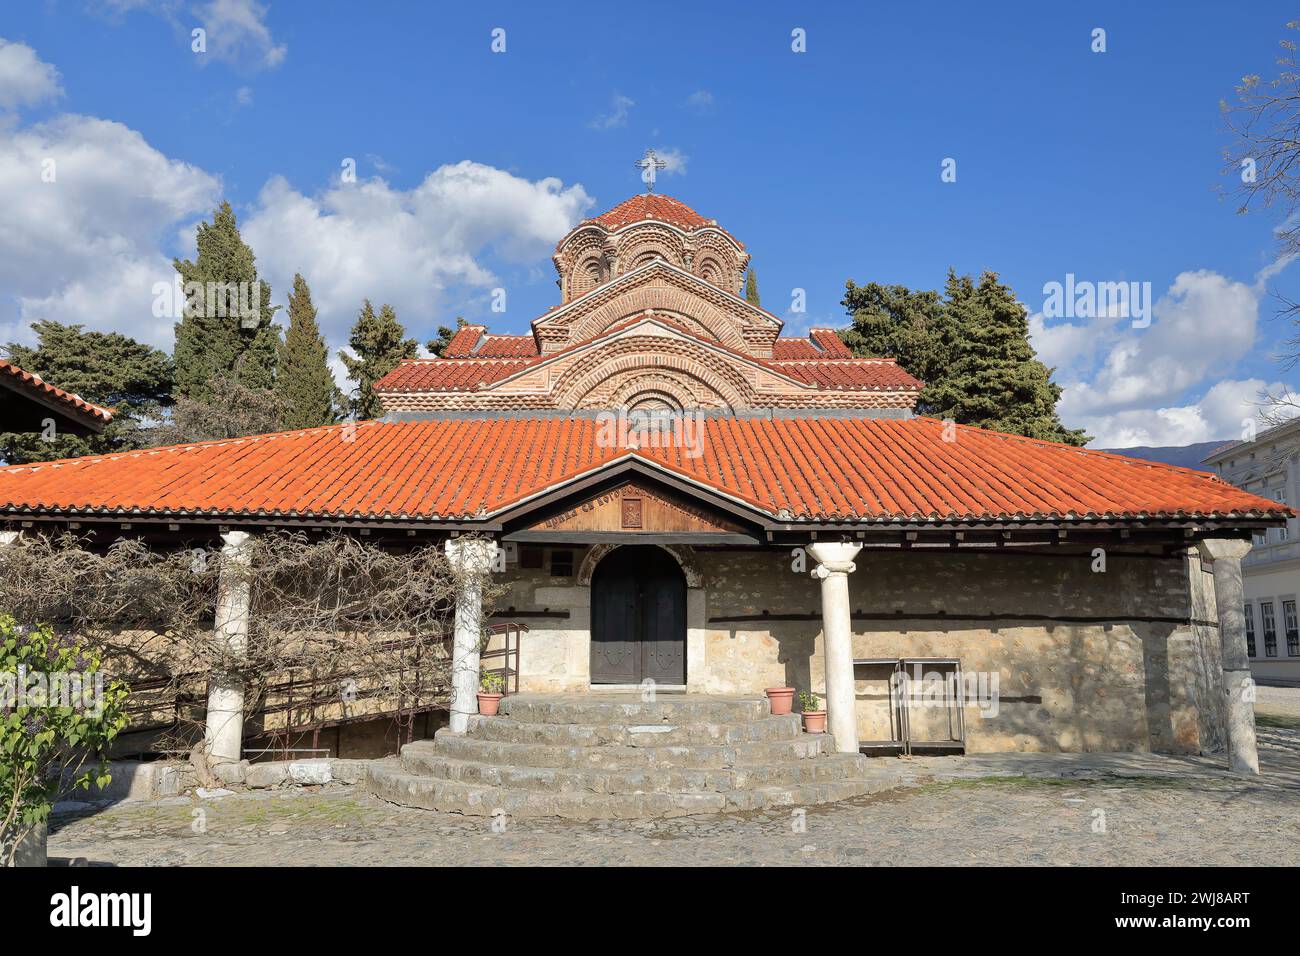 321-SS vista frontale inclinata della chiesa della Santa madre di Dio Perivleptos - Crkva Presveta Bogorodica - risalente al 1295 d.C. Ohrid-Macedonia del Nord. Foto Stock